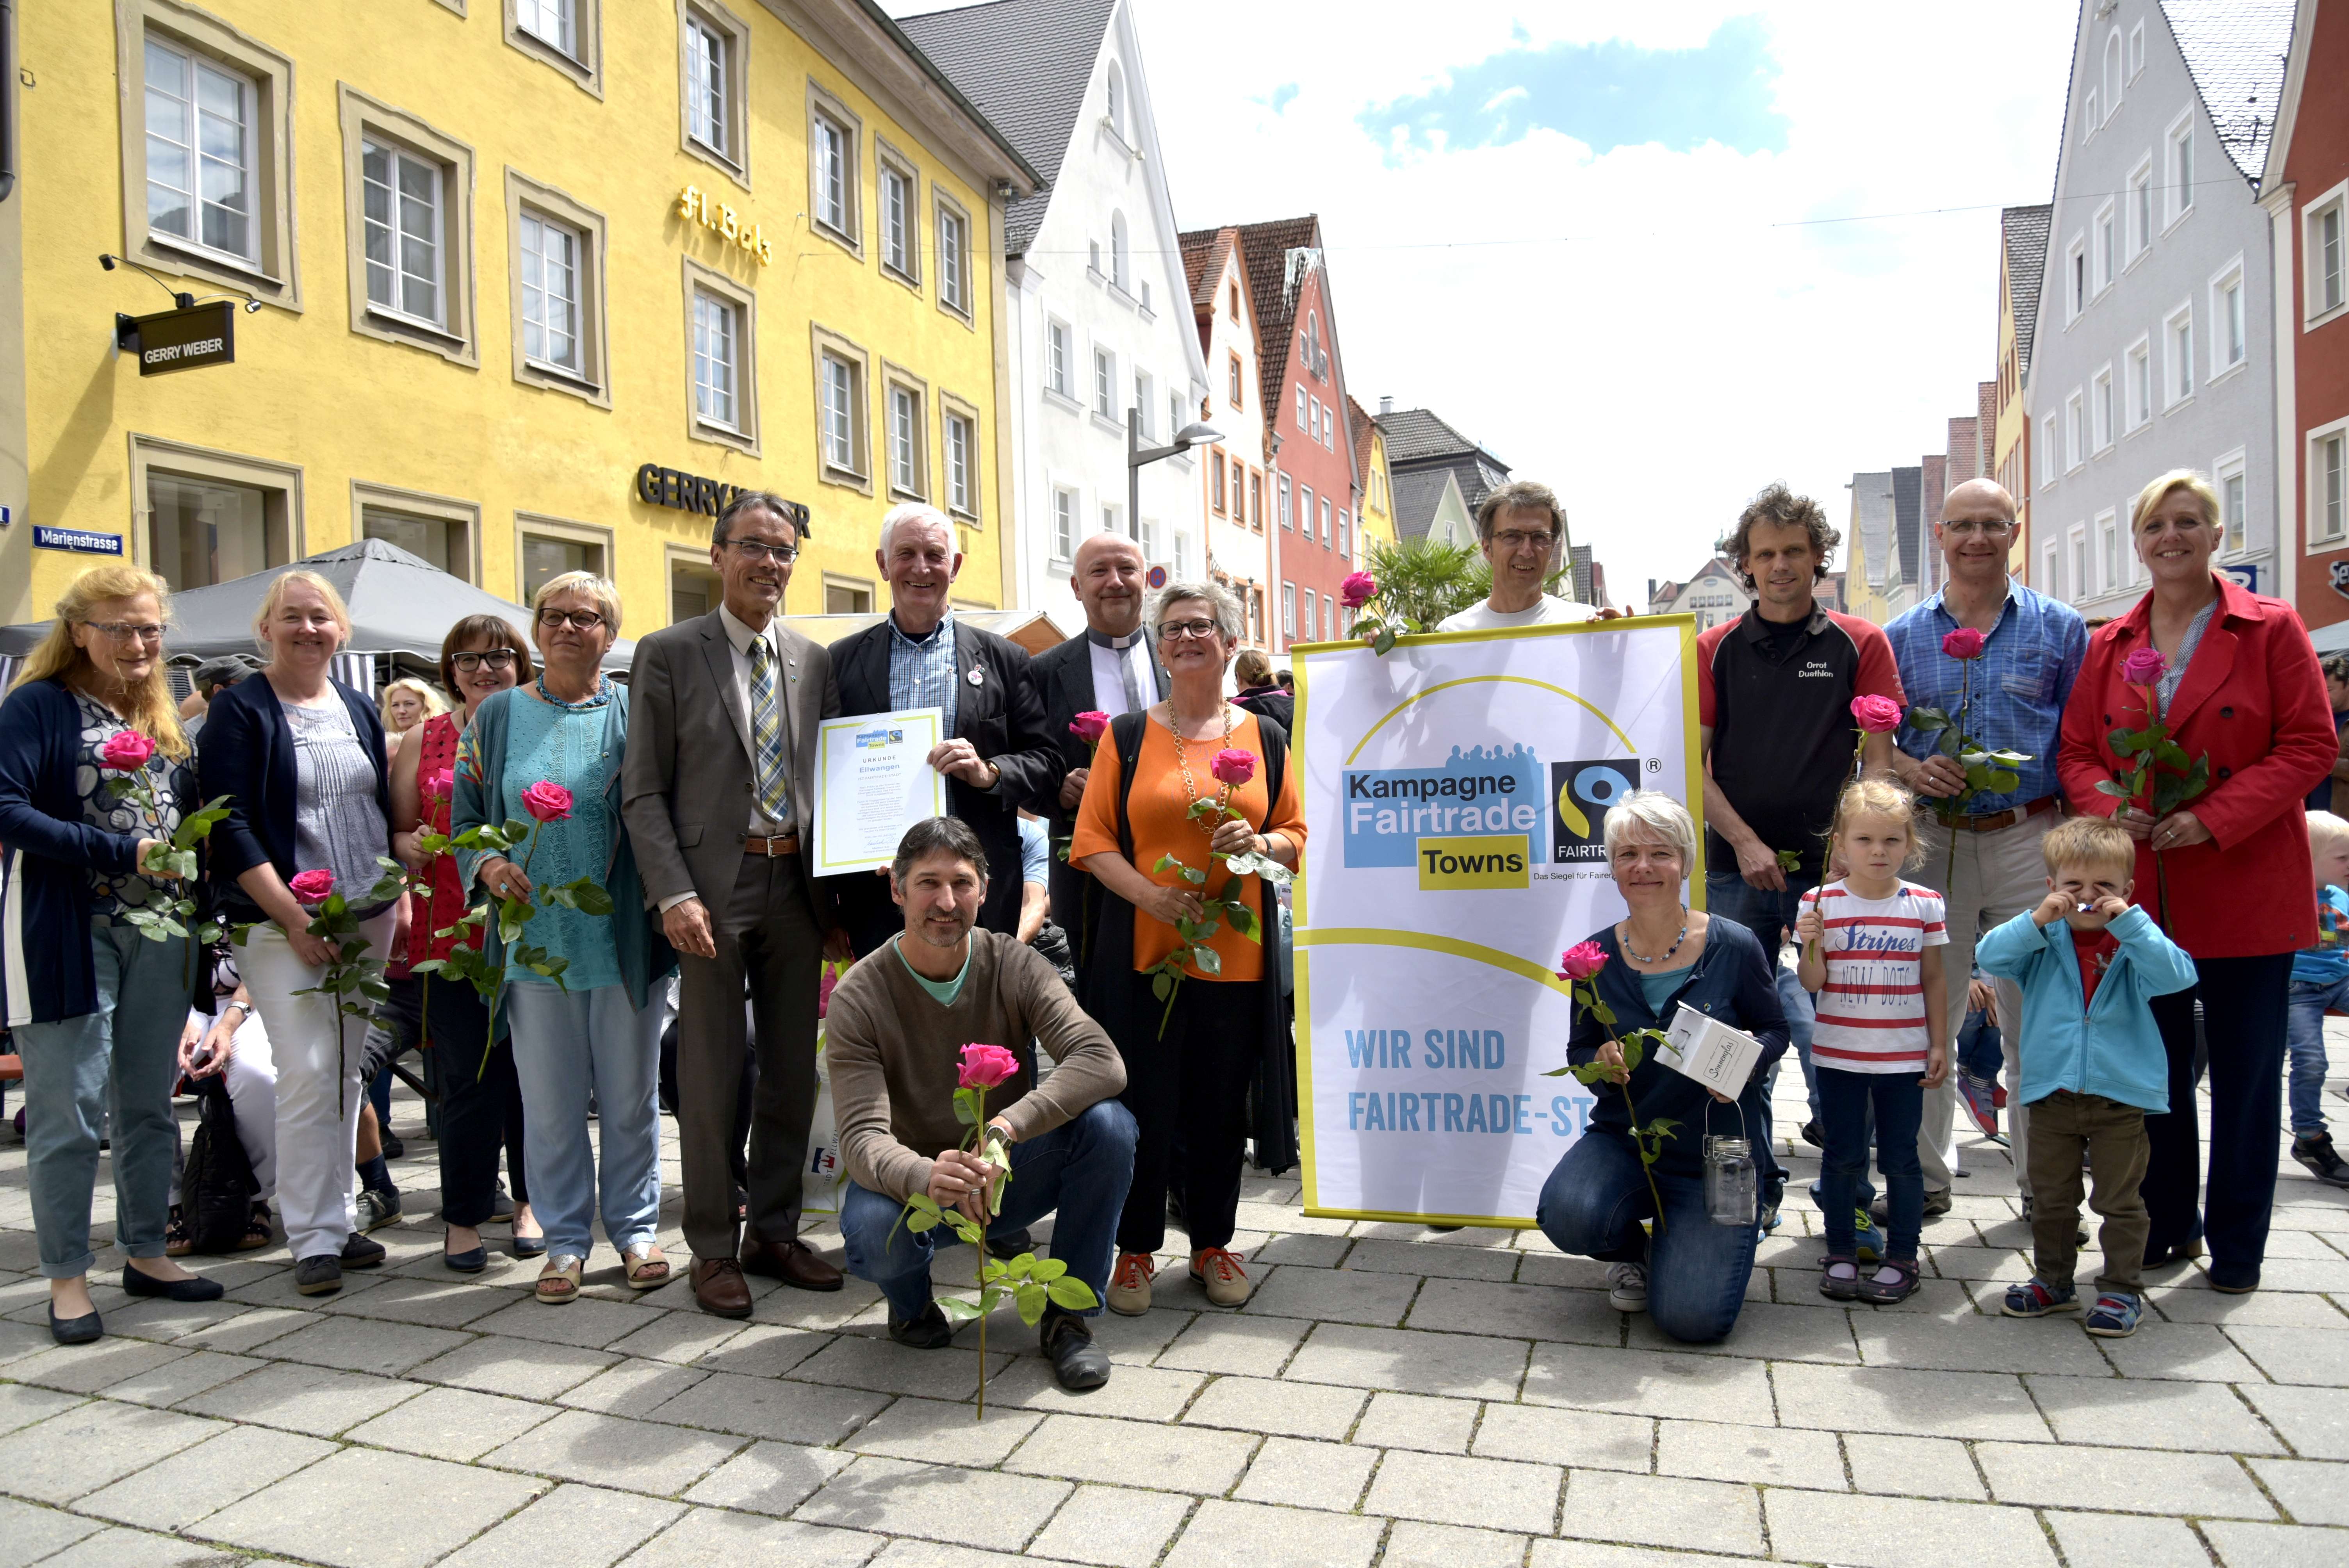 Überreichung der Urkunde durch den Fairtrade-Ehrenbotschafter Manfred Holz.